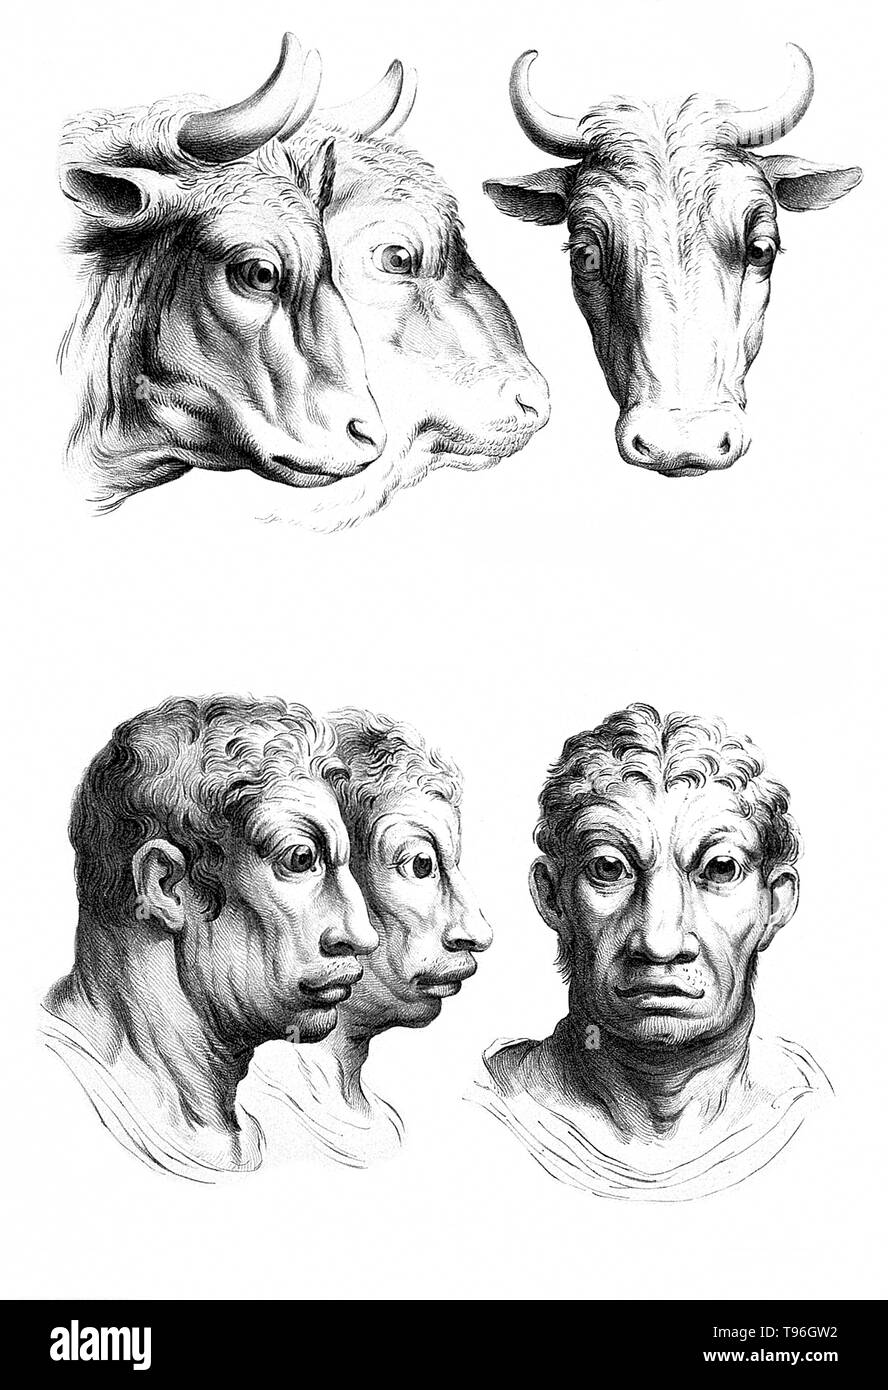 L'objectif de physiognomy est à juger les gens en fonction de caractéristiques du visage. Charles Le Brun (24 février 1619 - 12 février 1690) était un peintre français, théoricien d'art, décorateur et peintre de la cour de Louis XIV. Banque D'Images